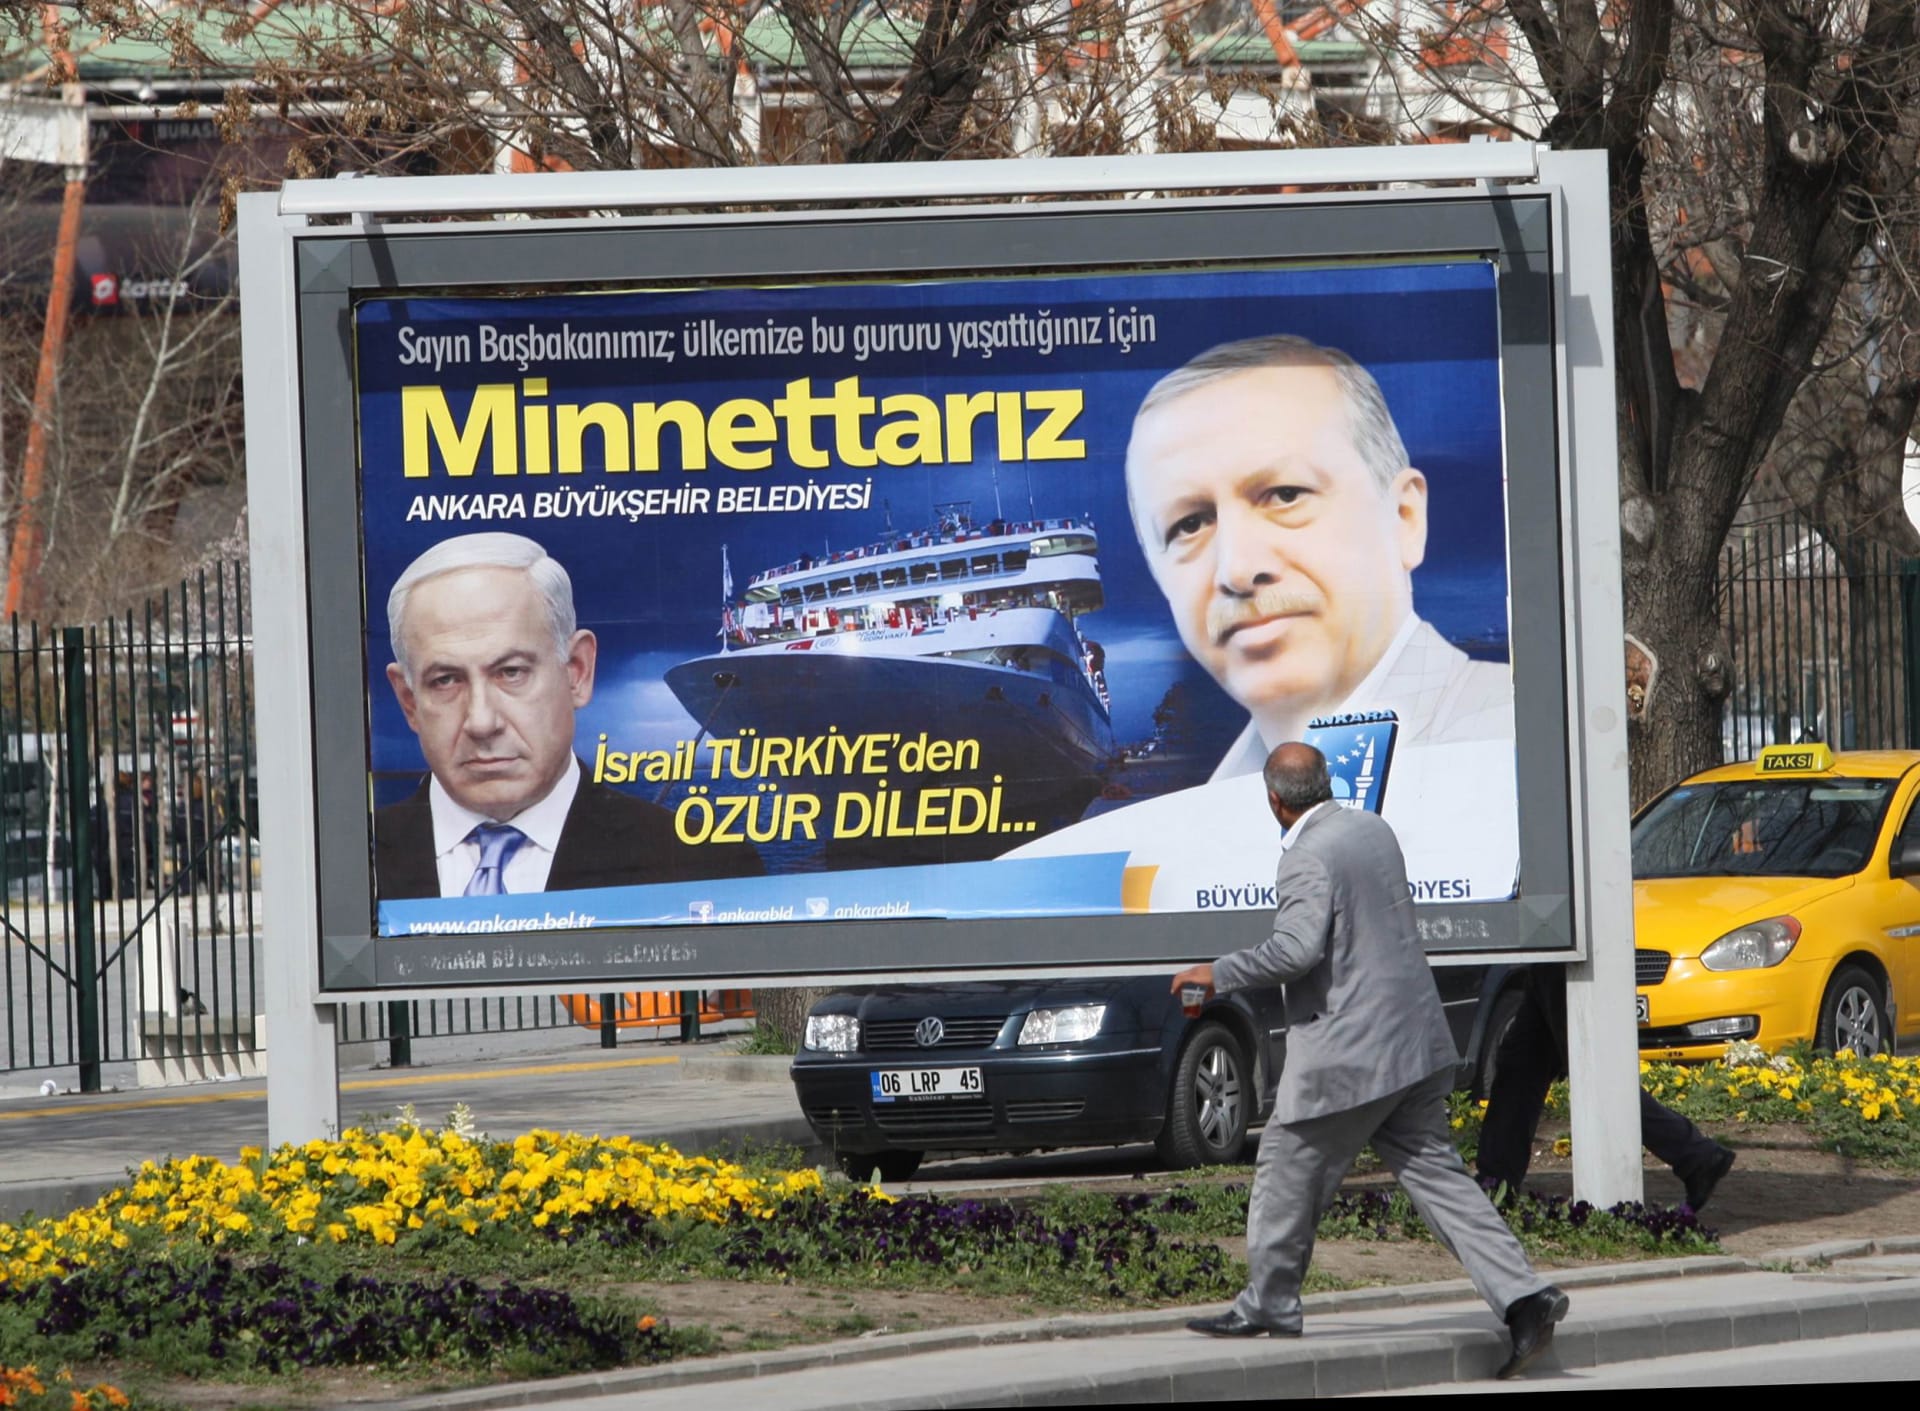 تركيا تسقط الدعوى القضائية ضد مسؤولين إسرائيليين حول هجوم "مرمرة"